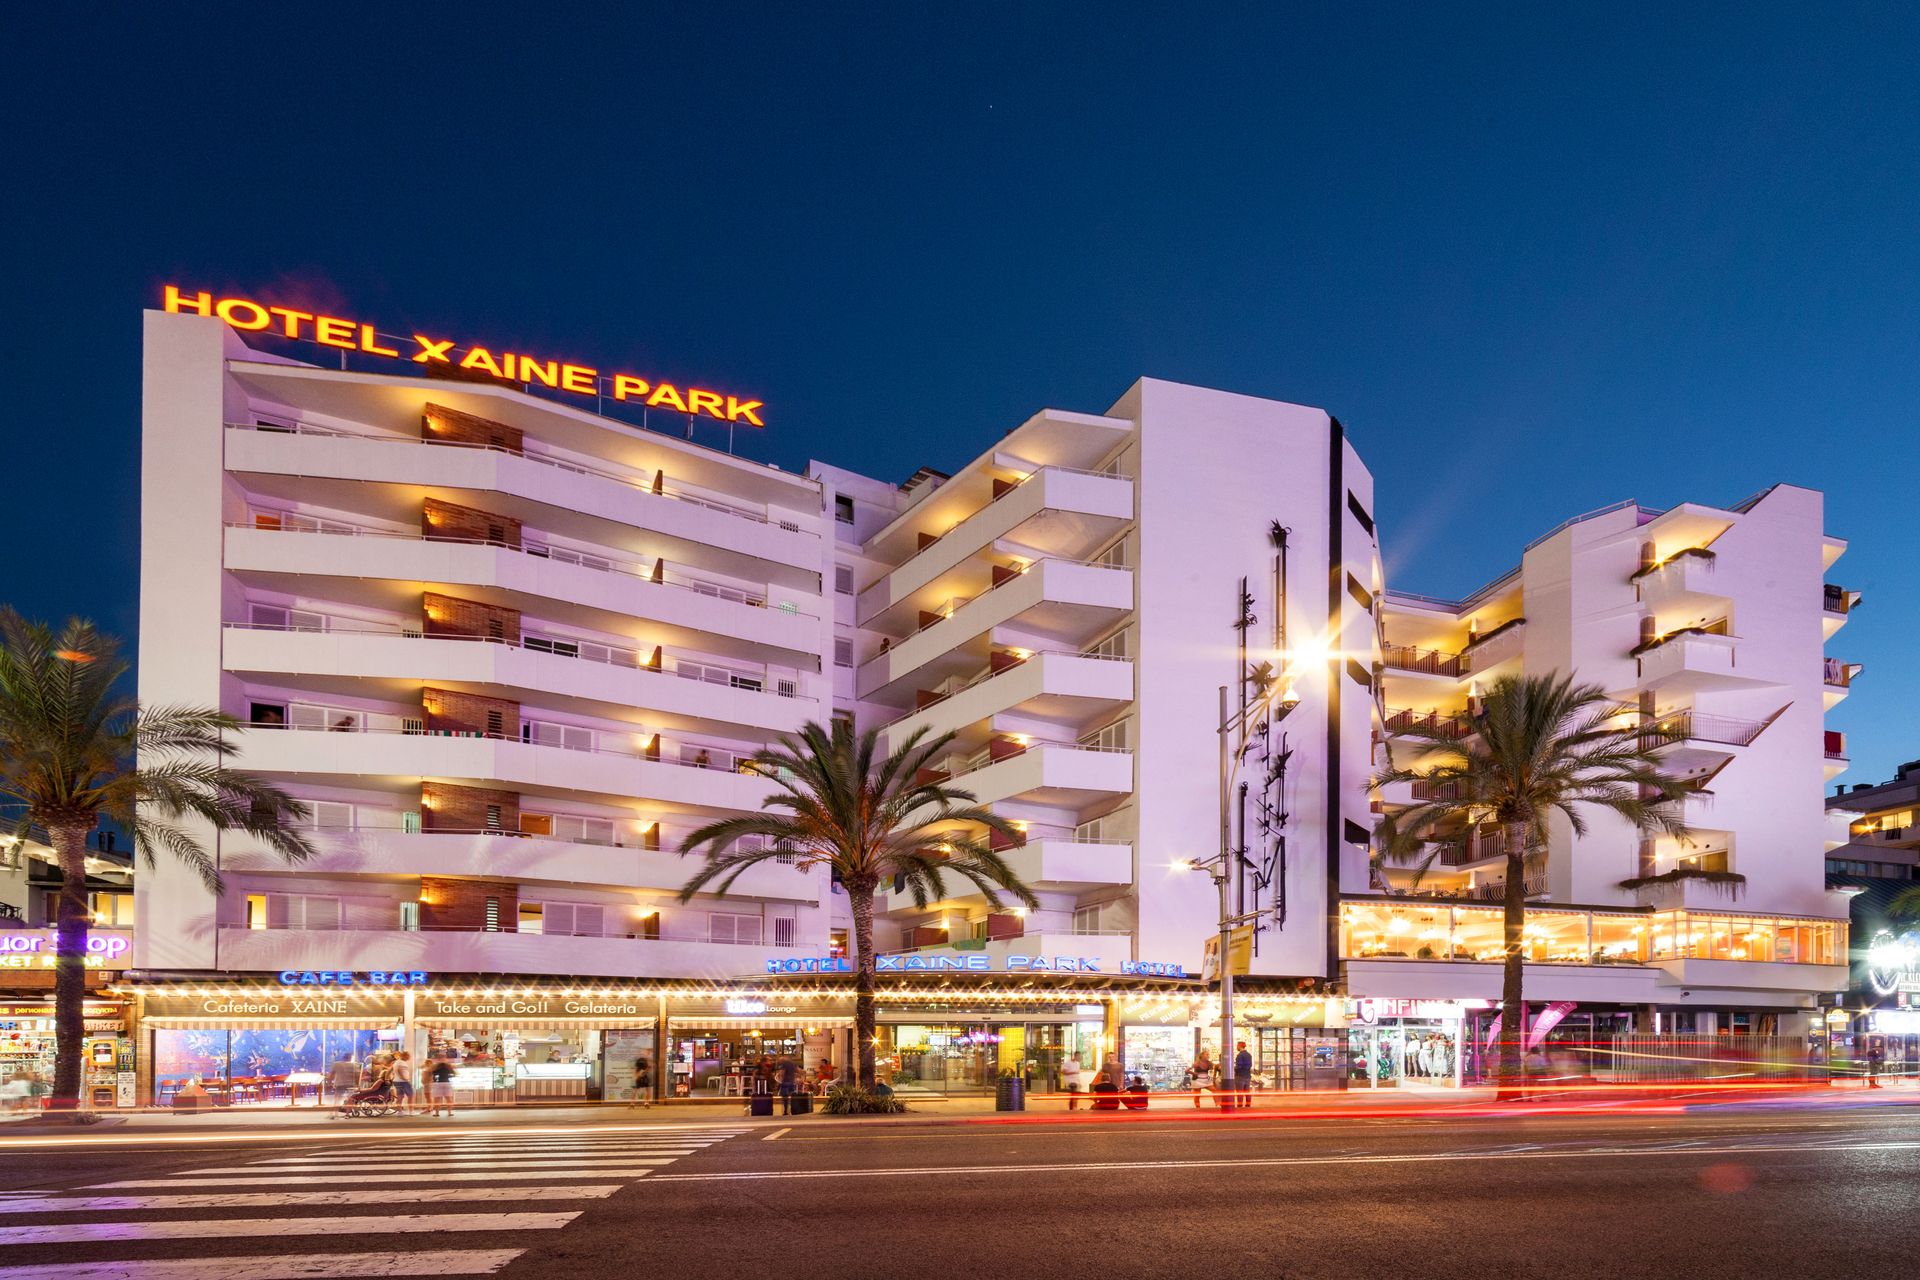 Hotel Xaine Park in Lloret de Mar